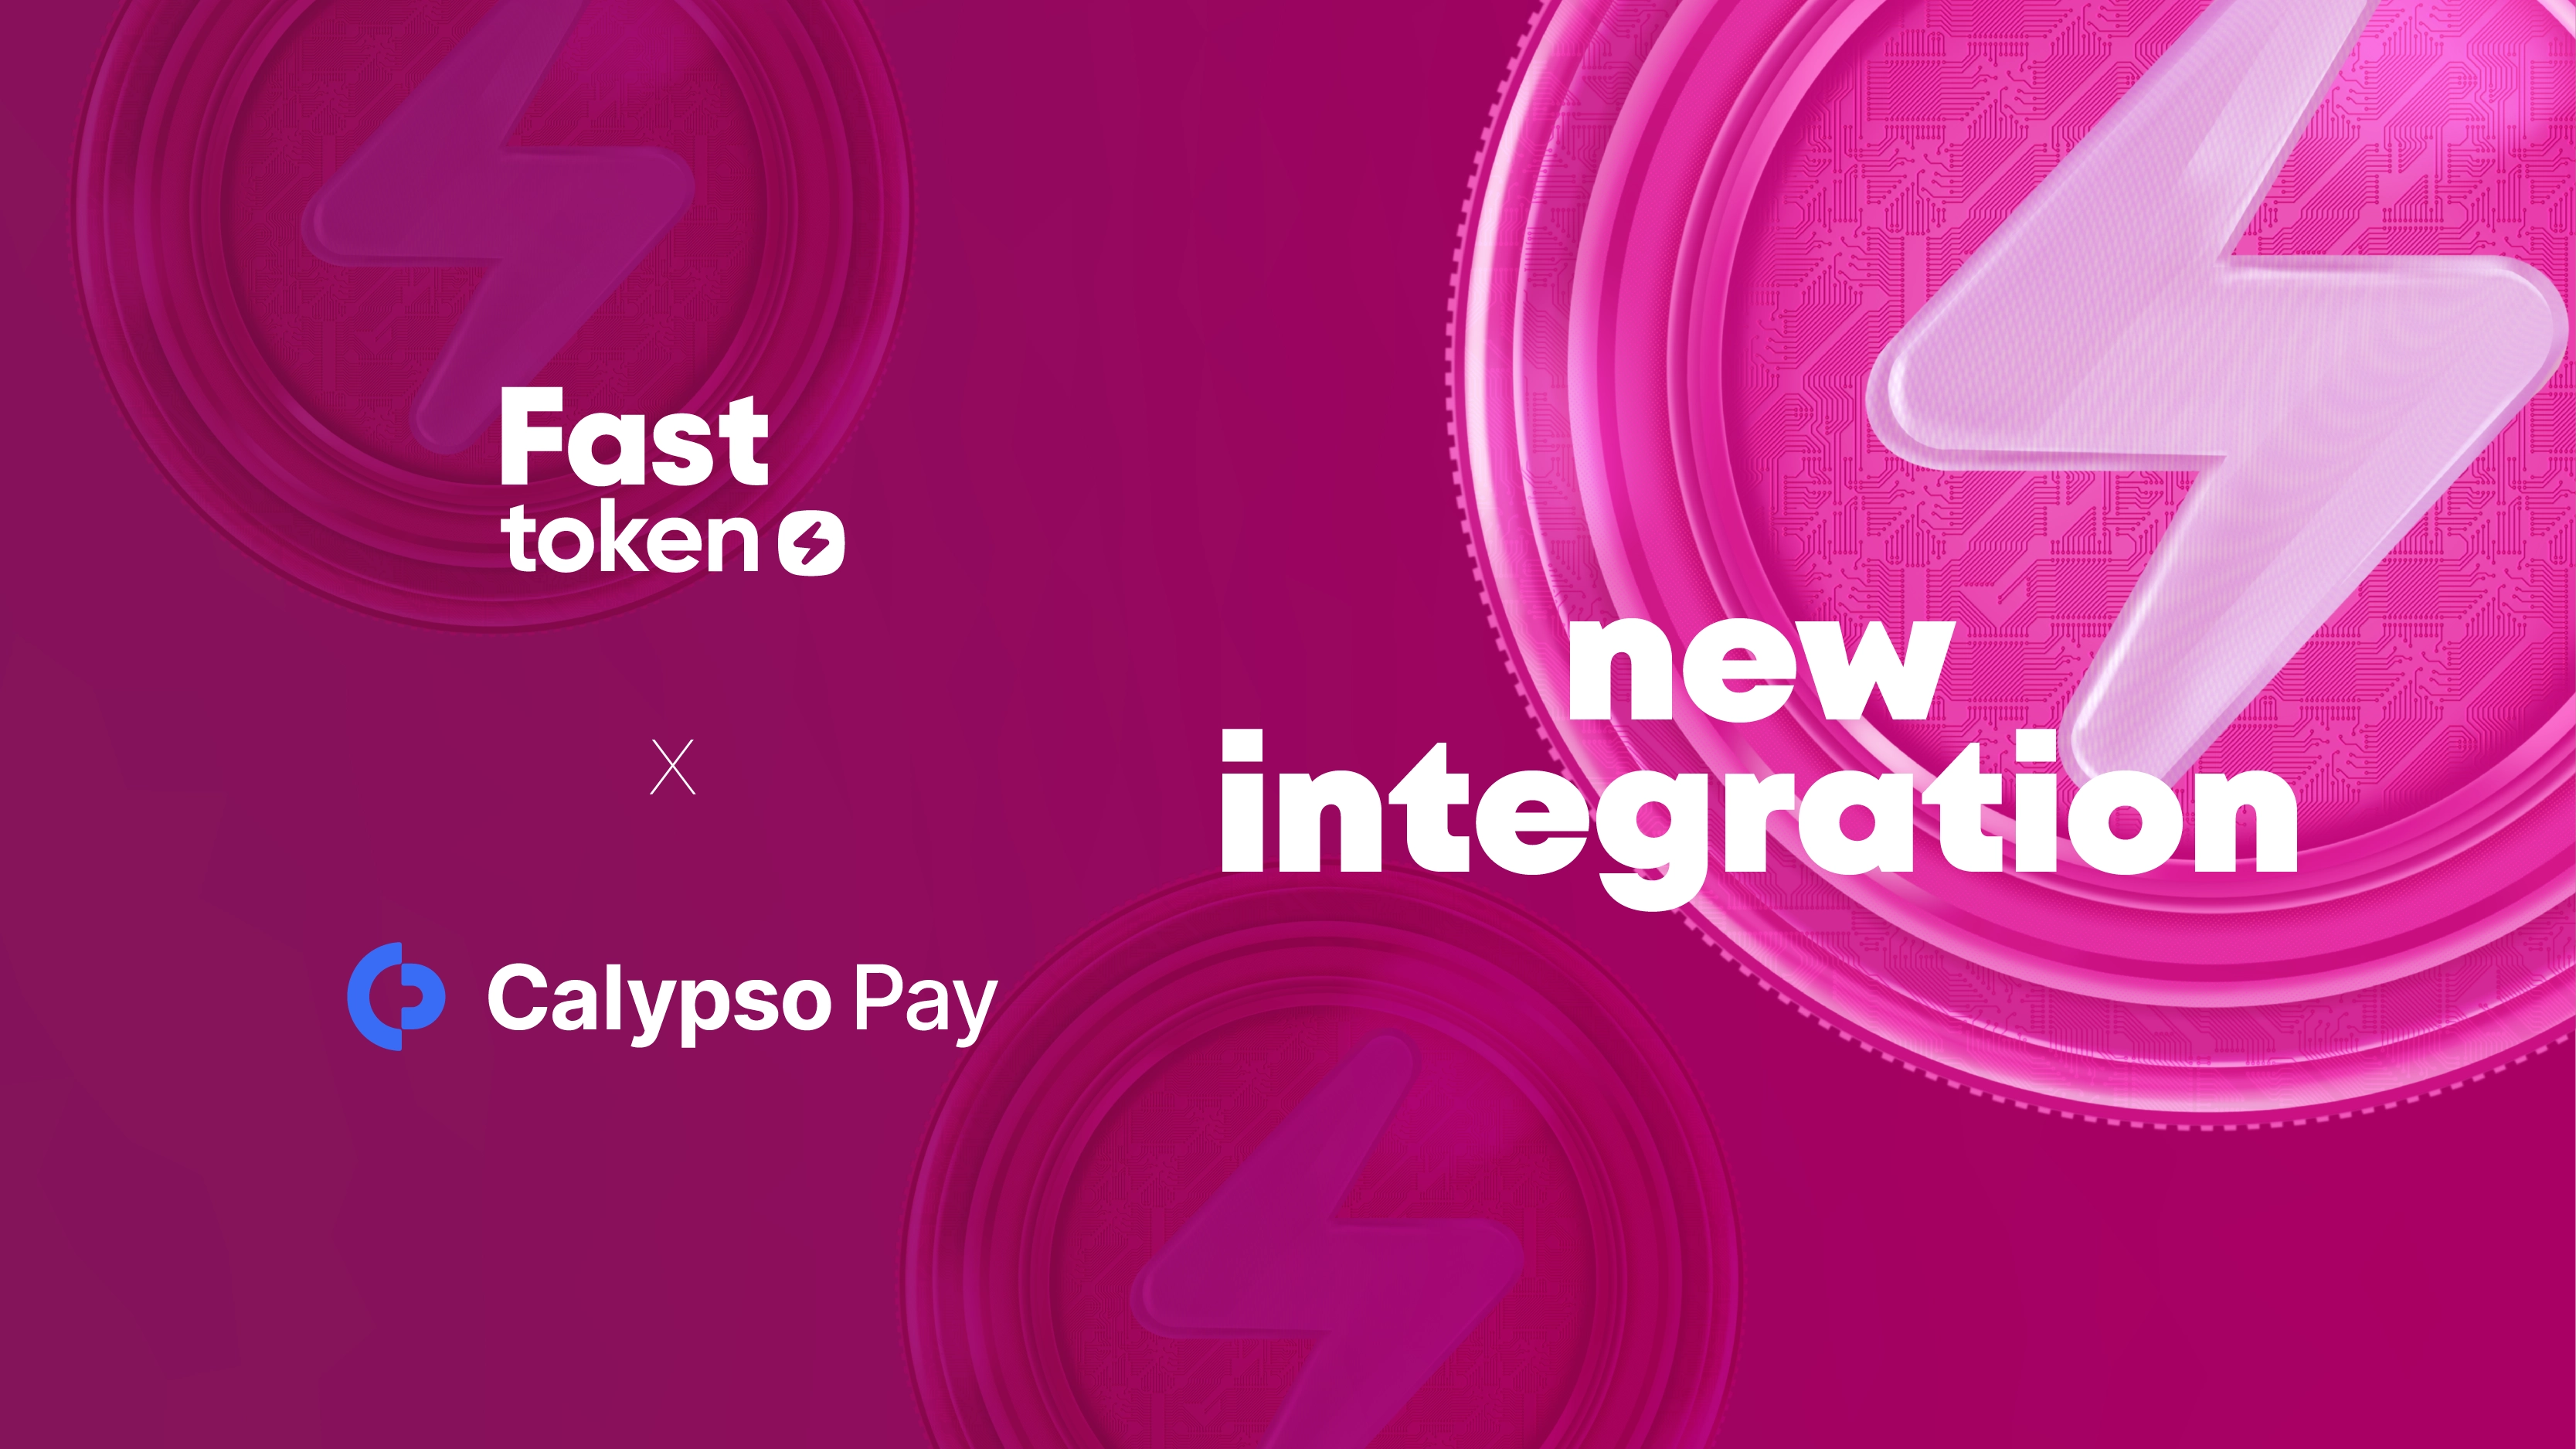 FTN já está integrado no Calypso Pay